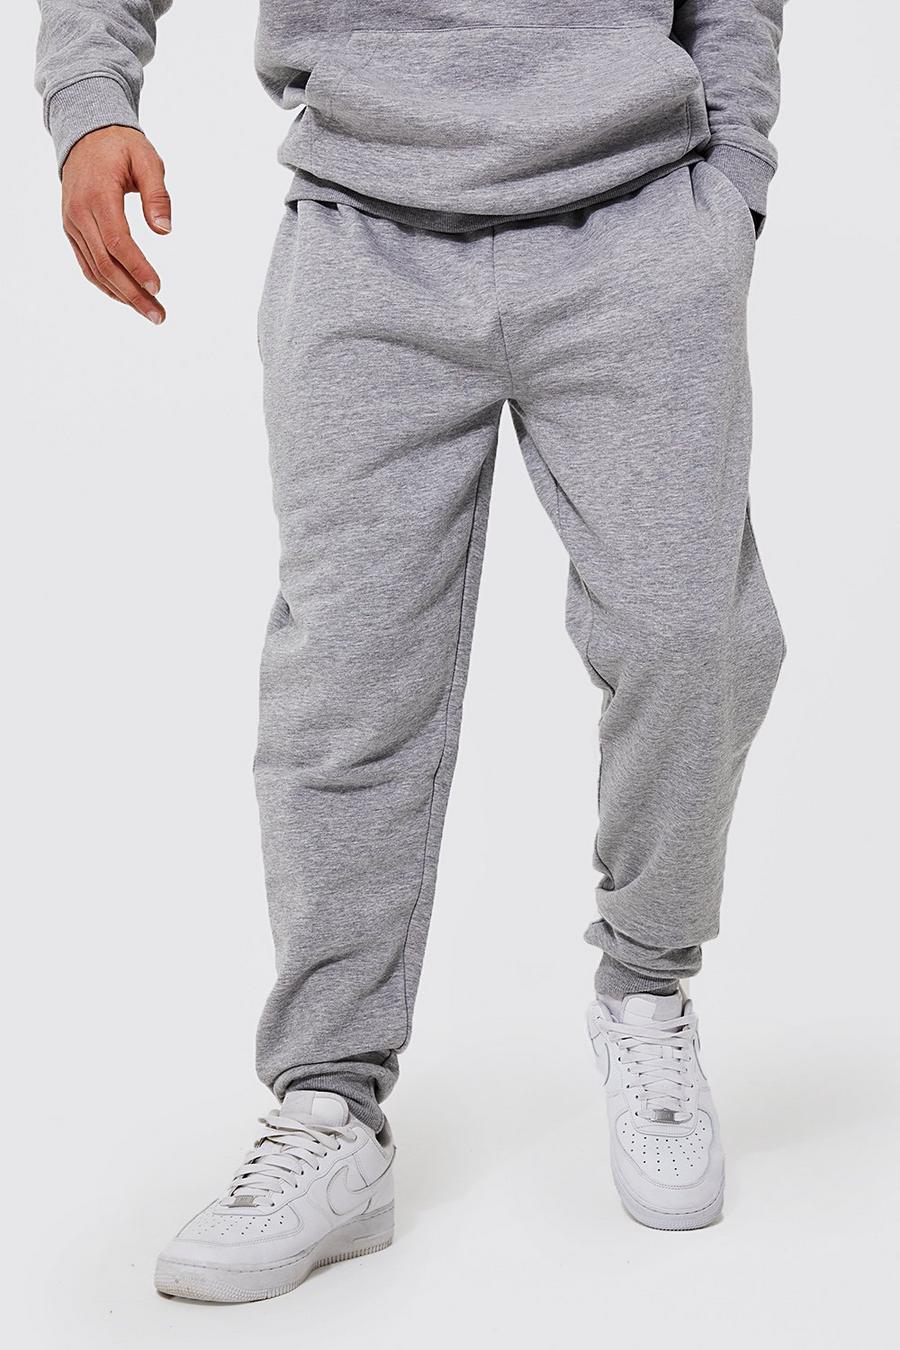 Pantaloni tuta Regular Fit in cotone REEL, Grey gris